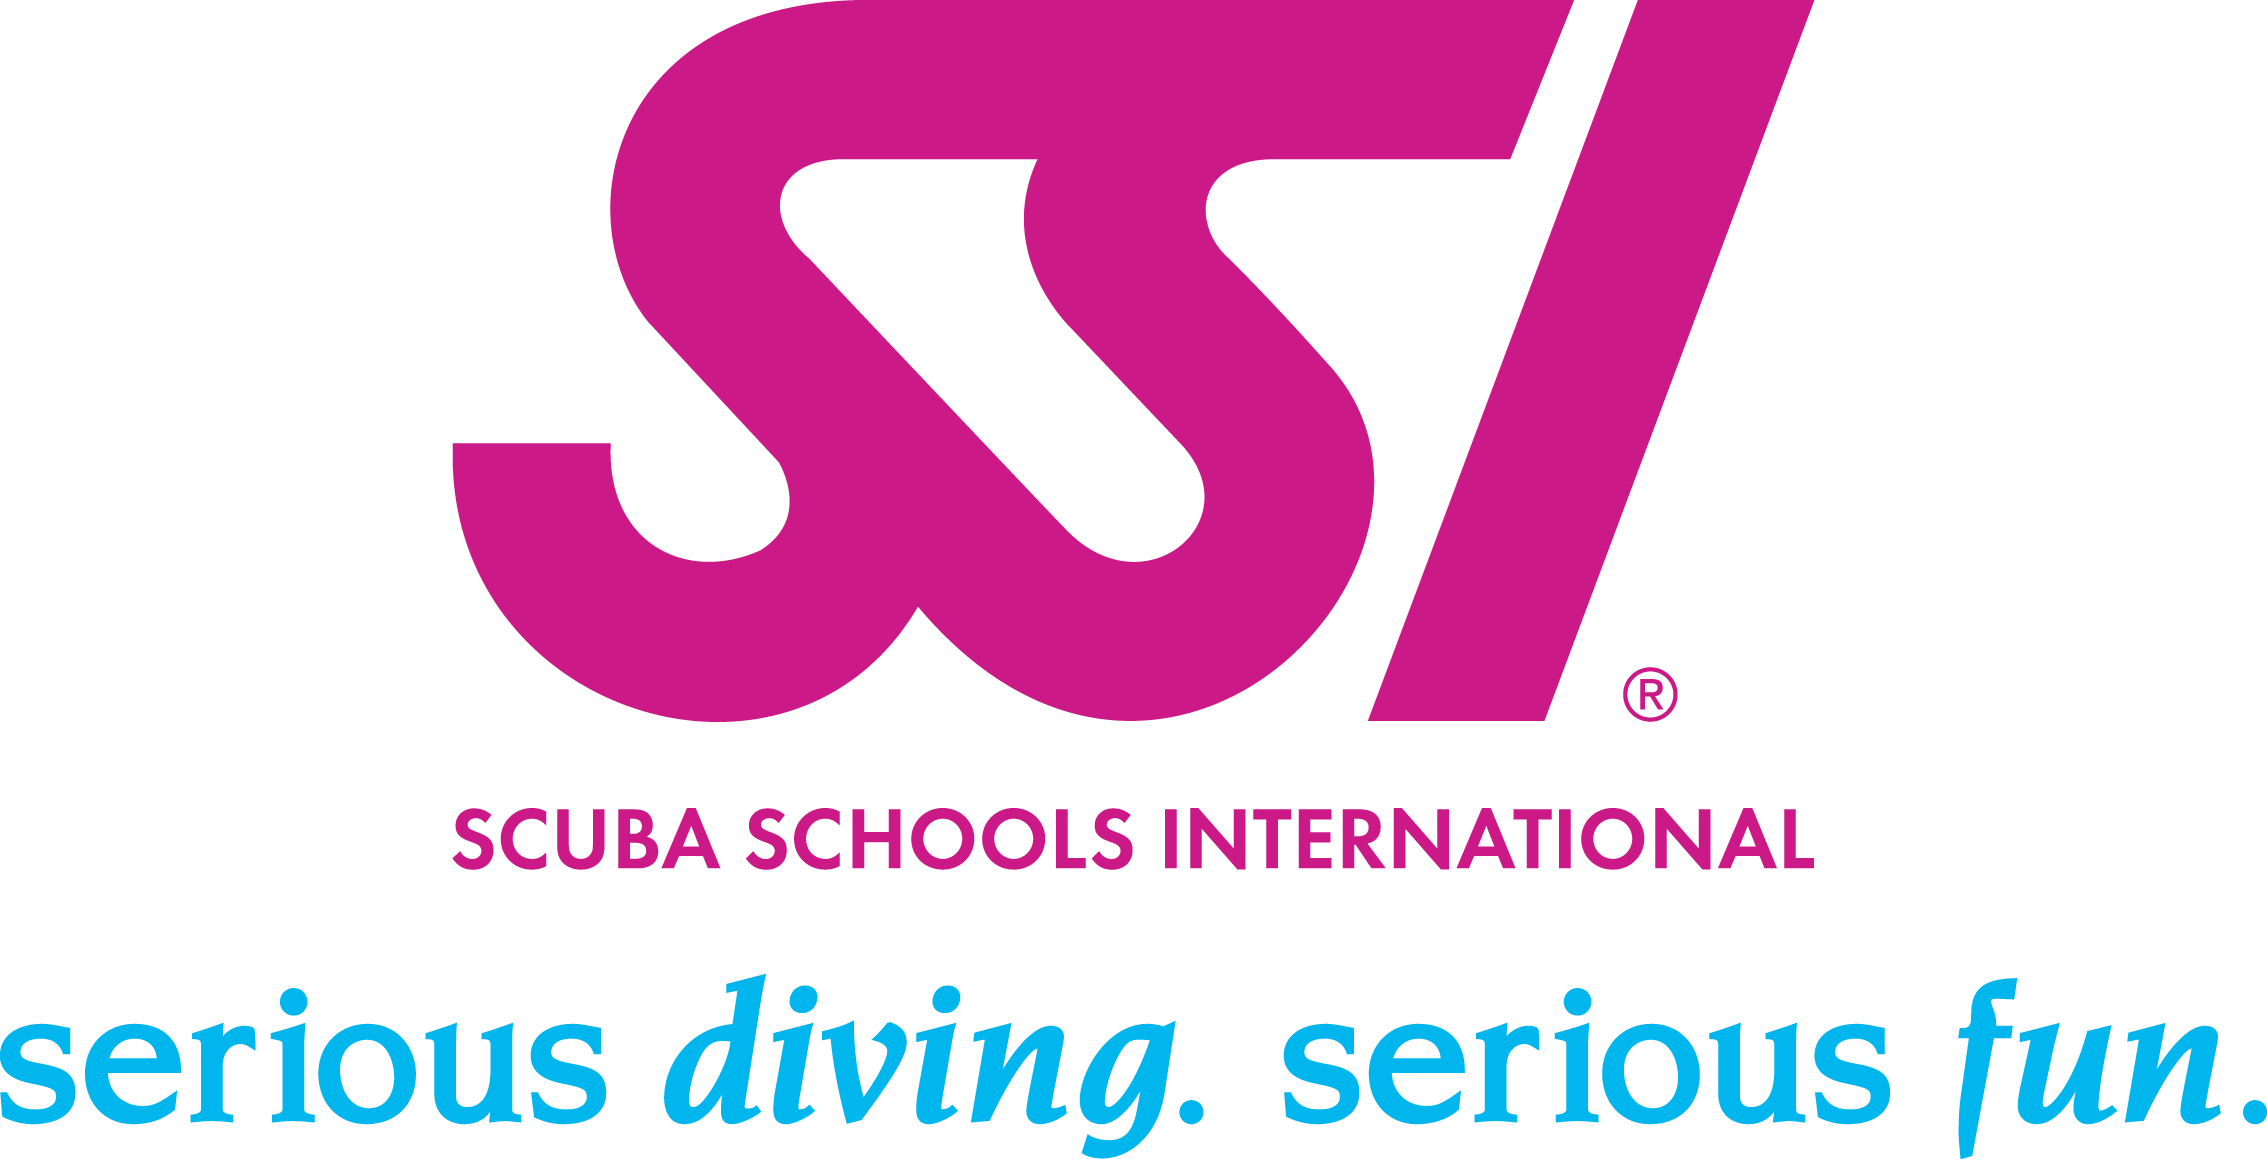 Z nami zdobędą Państwo podstawowe uprawnienia nurkowe w systemie SSI (Scuba Schools International) oraz umiejętności specjalistyczne jak nurek nitroksowy, specjalista sprzętowy itp.